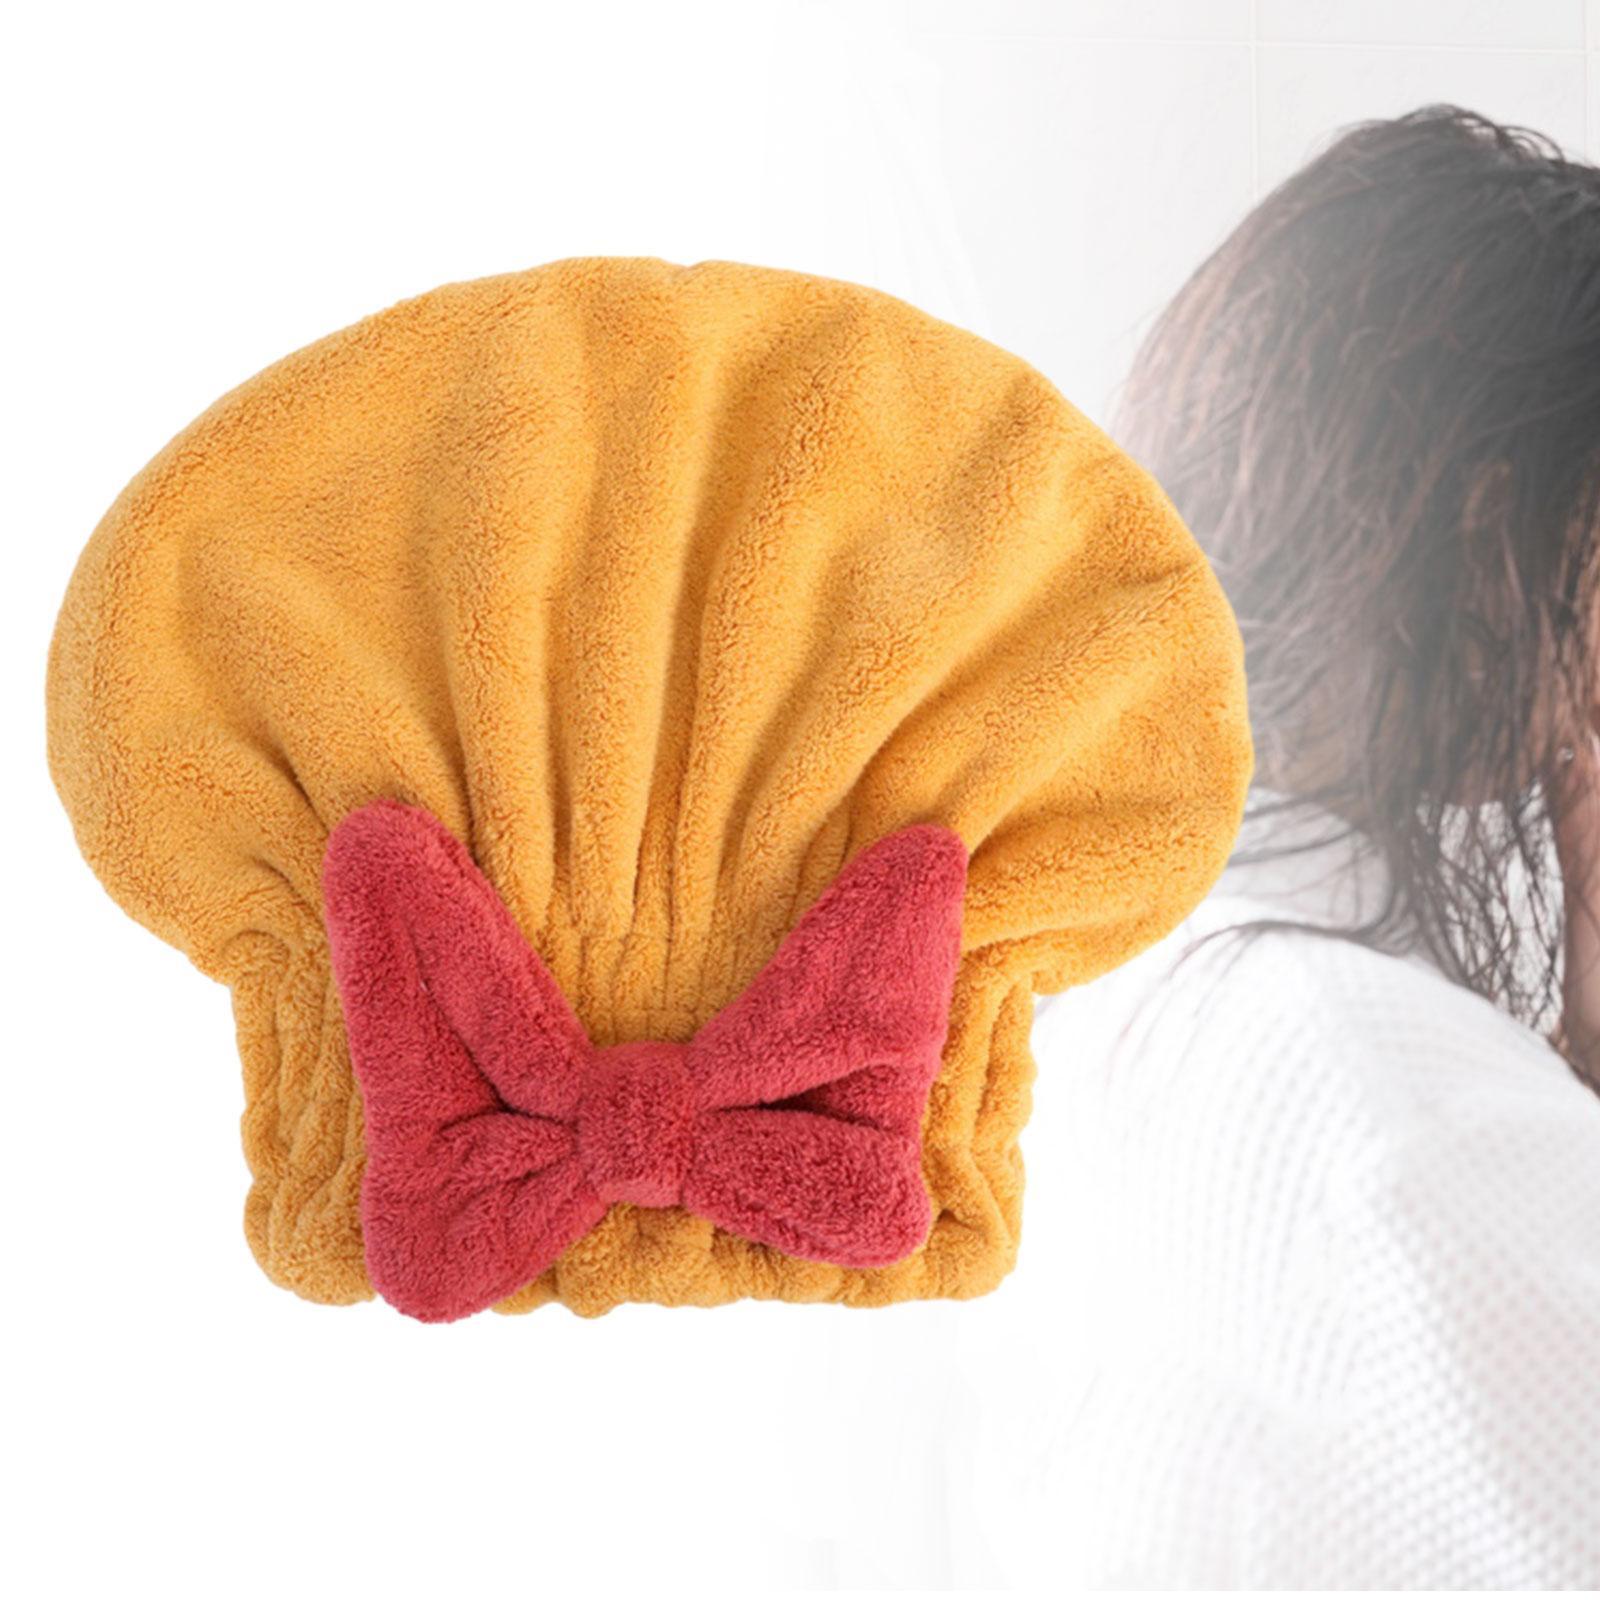 Hair Drying  Head Wrap Bath Cap Bath Towel for Curly Hair Long Hair